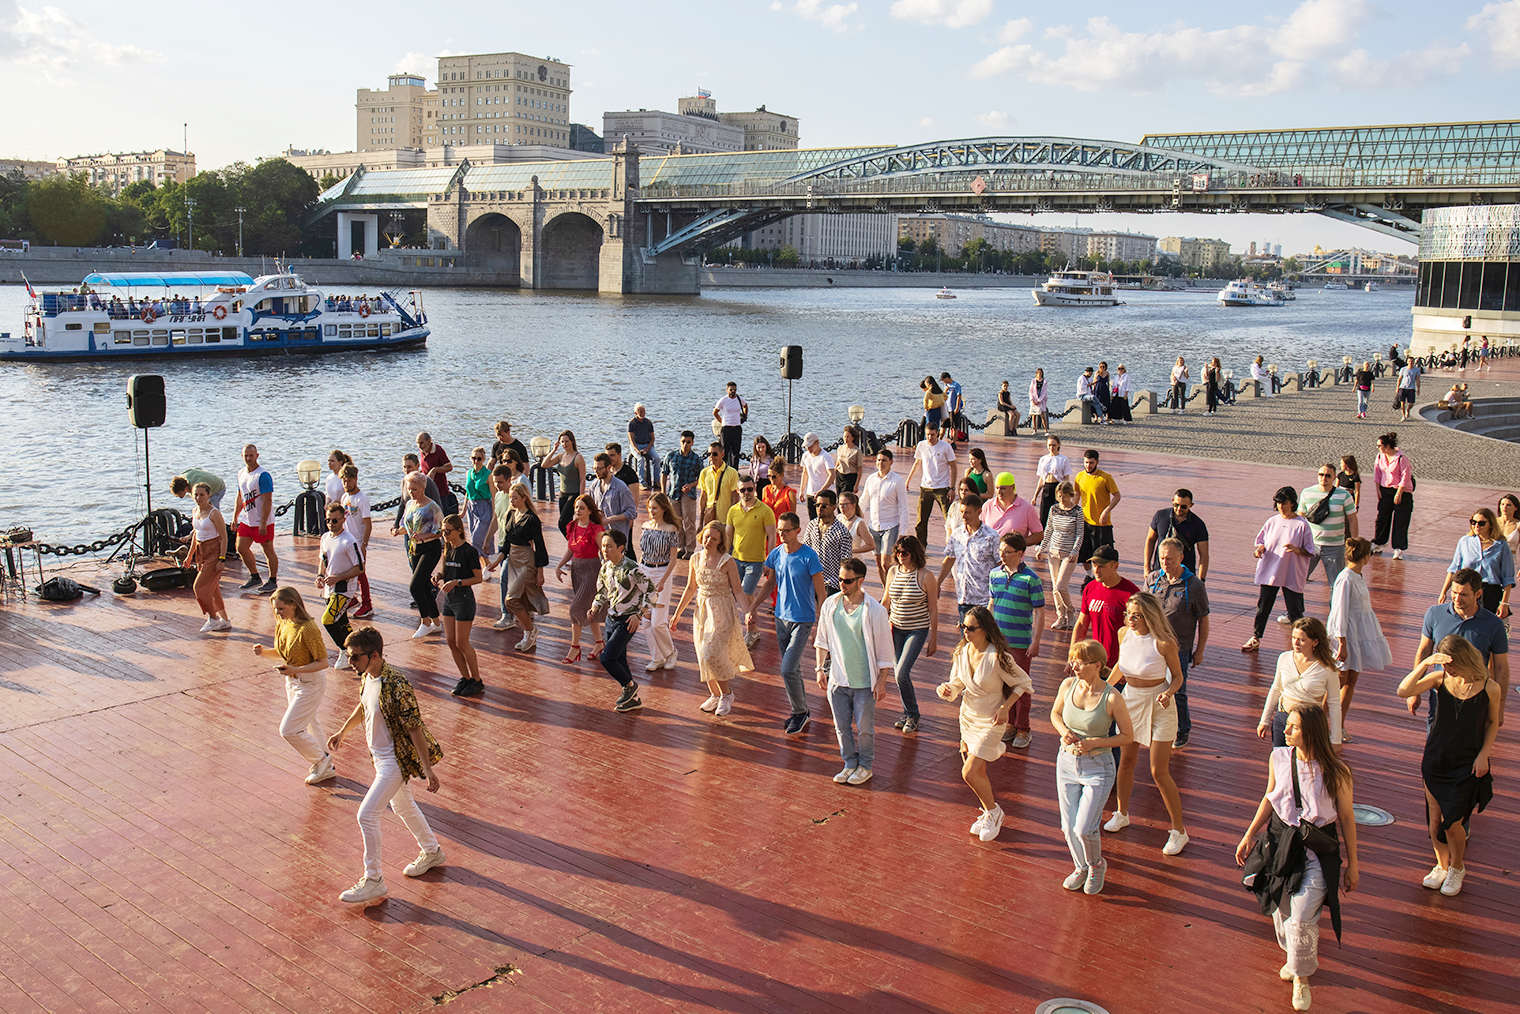 На танцплощадке в парке Горького летом собираются любители латиноамериканских танцев. Фото: Kaliva / Shutterstock